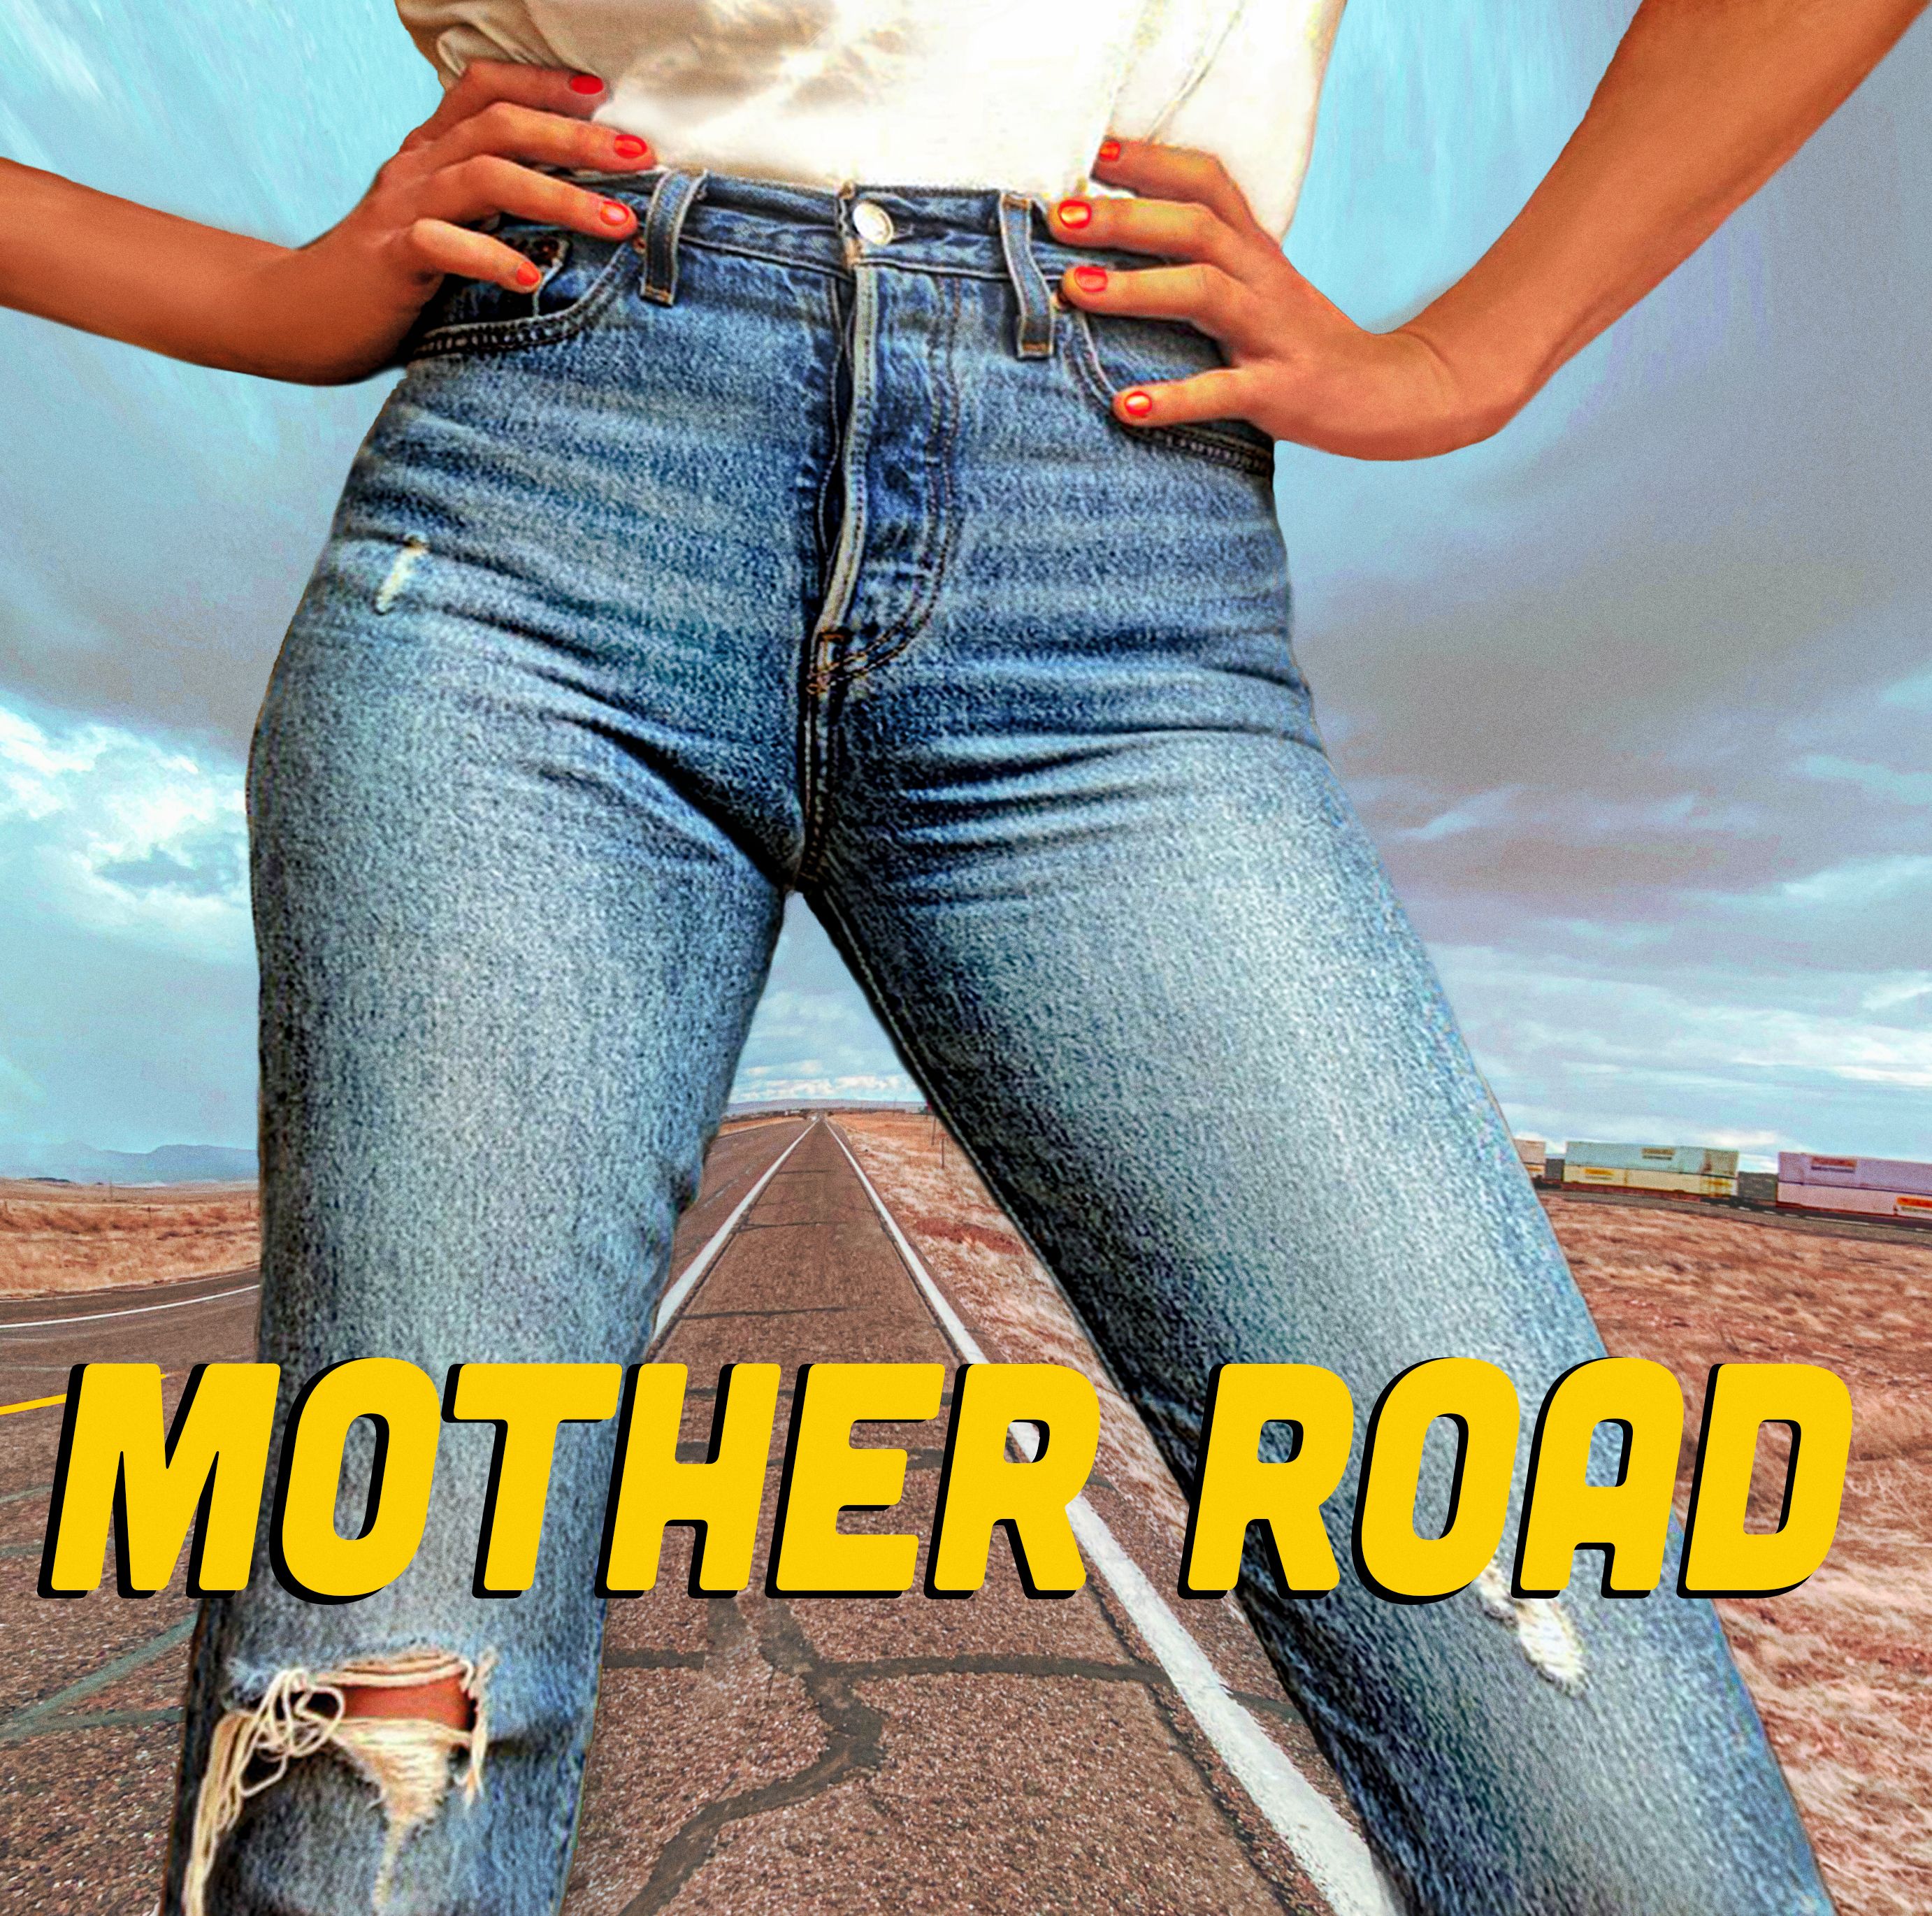 Grace Potter Announces New Album Mother Road